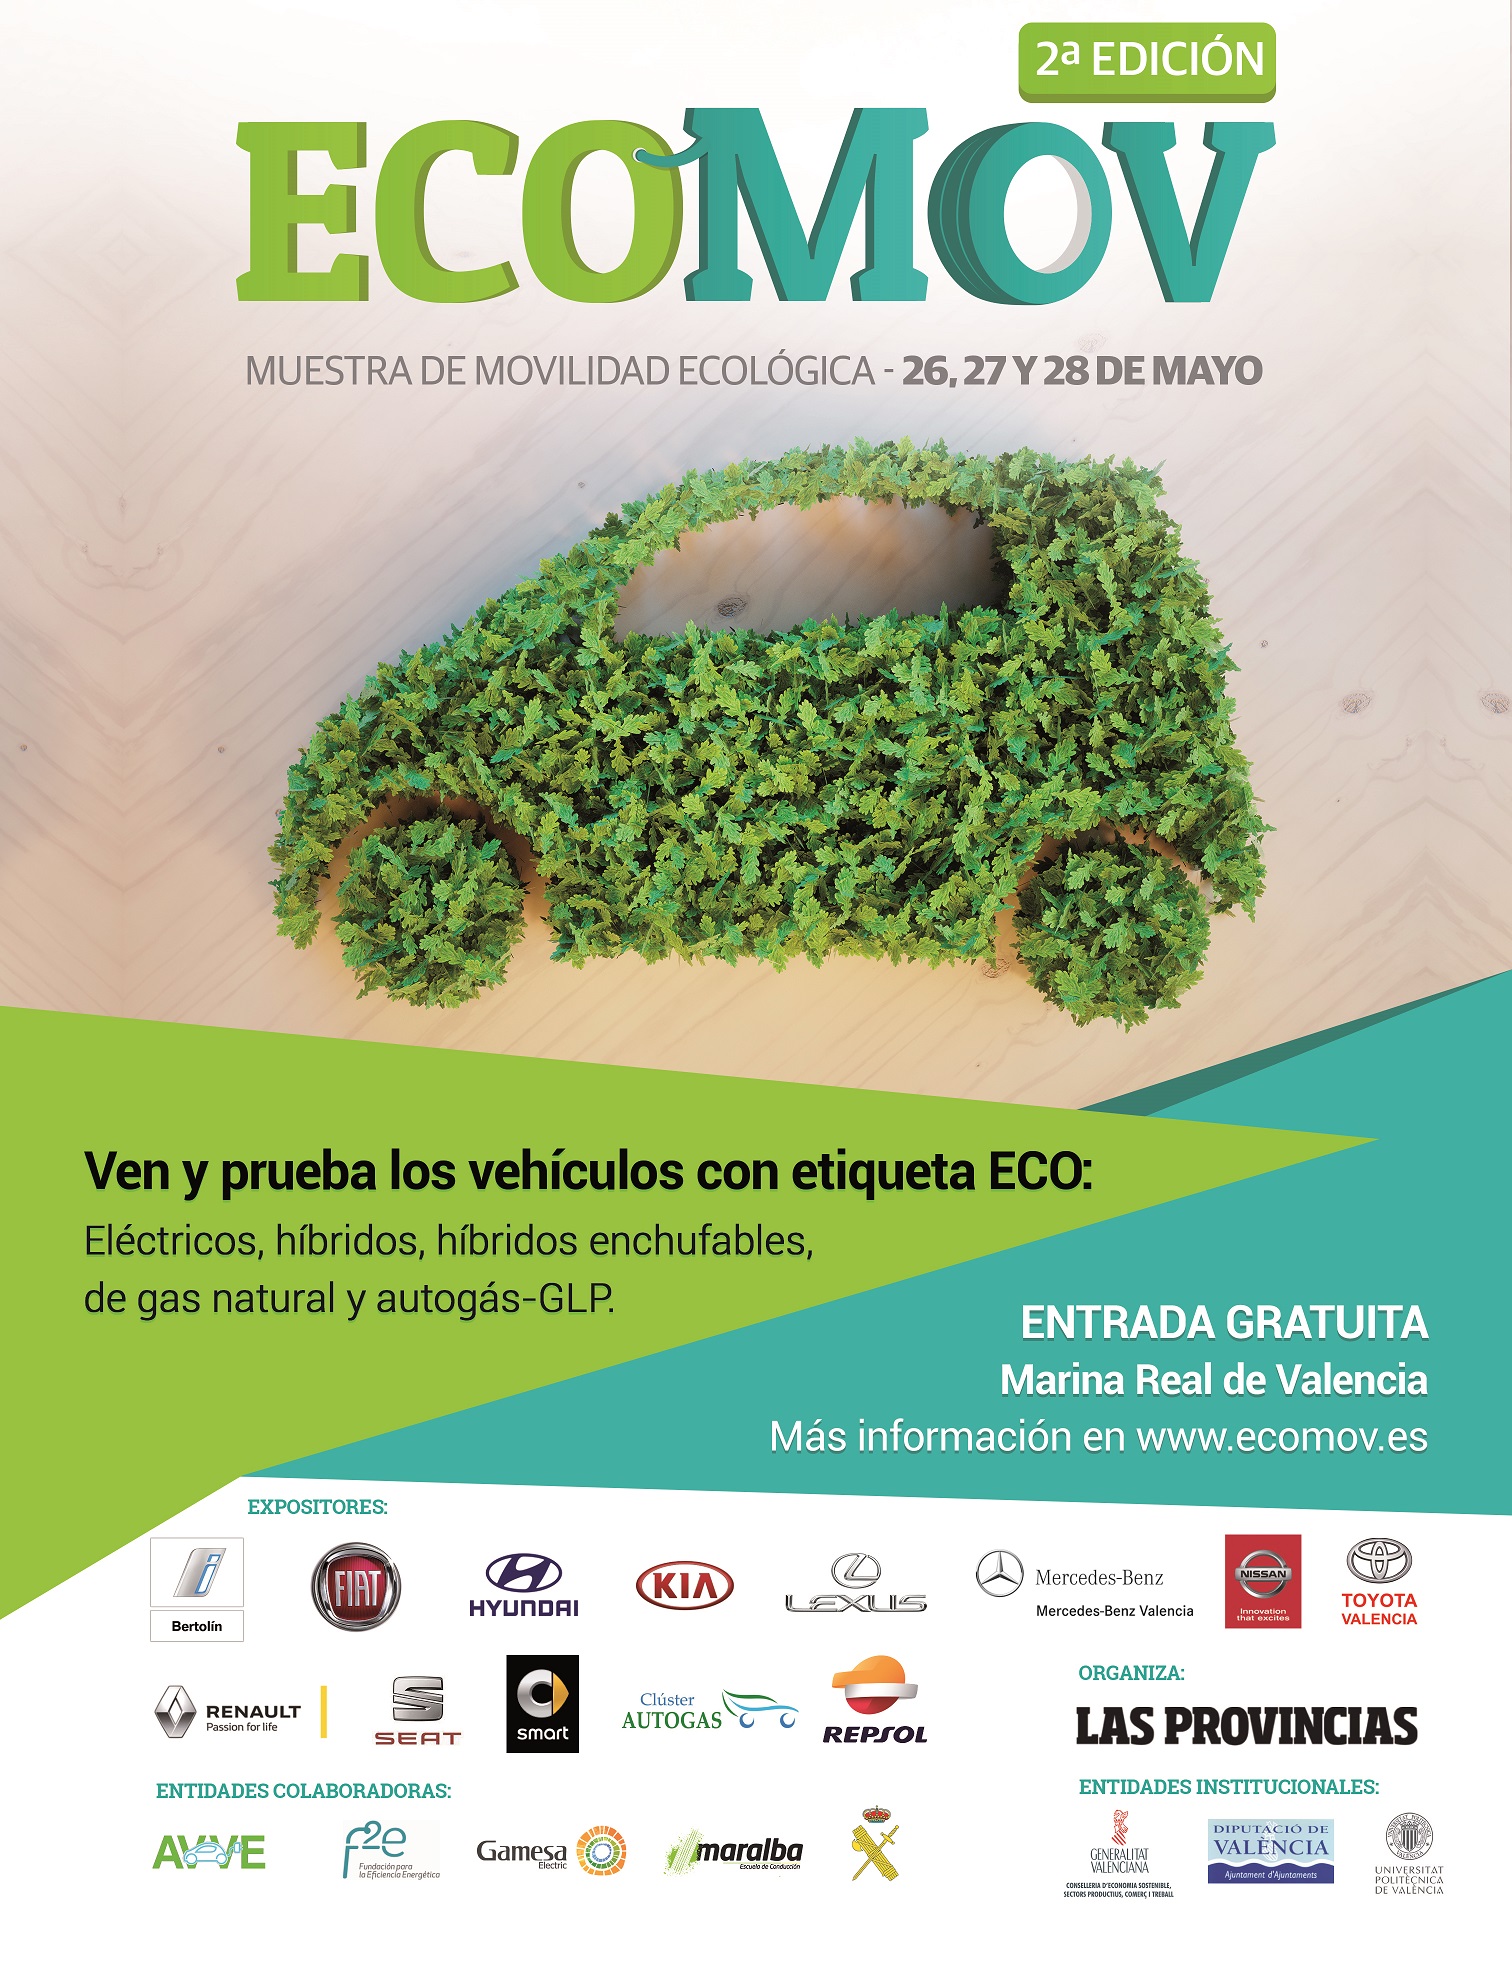 La segunda Edición de ECOMov será del 26 al 28 de Mayo